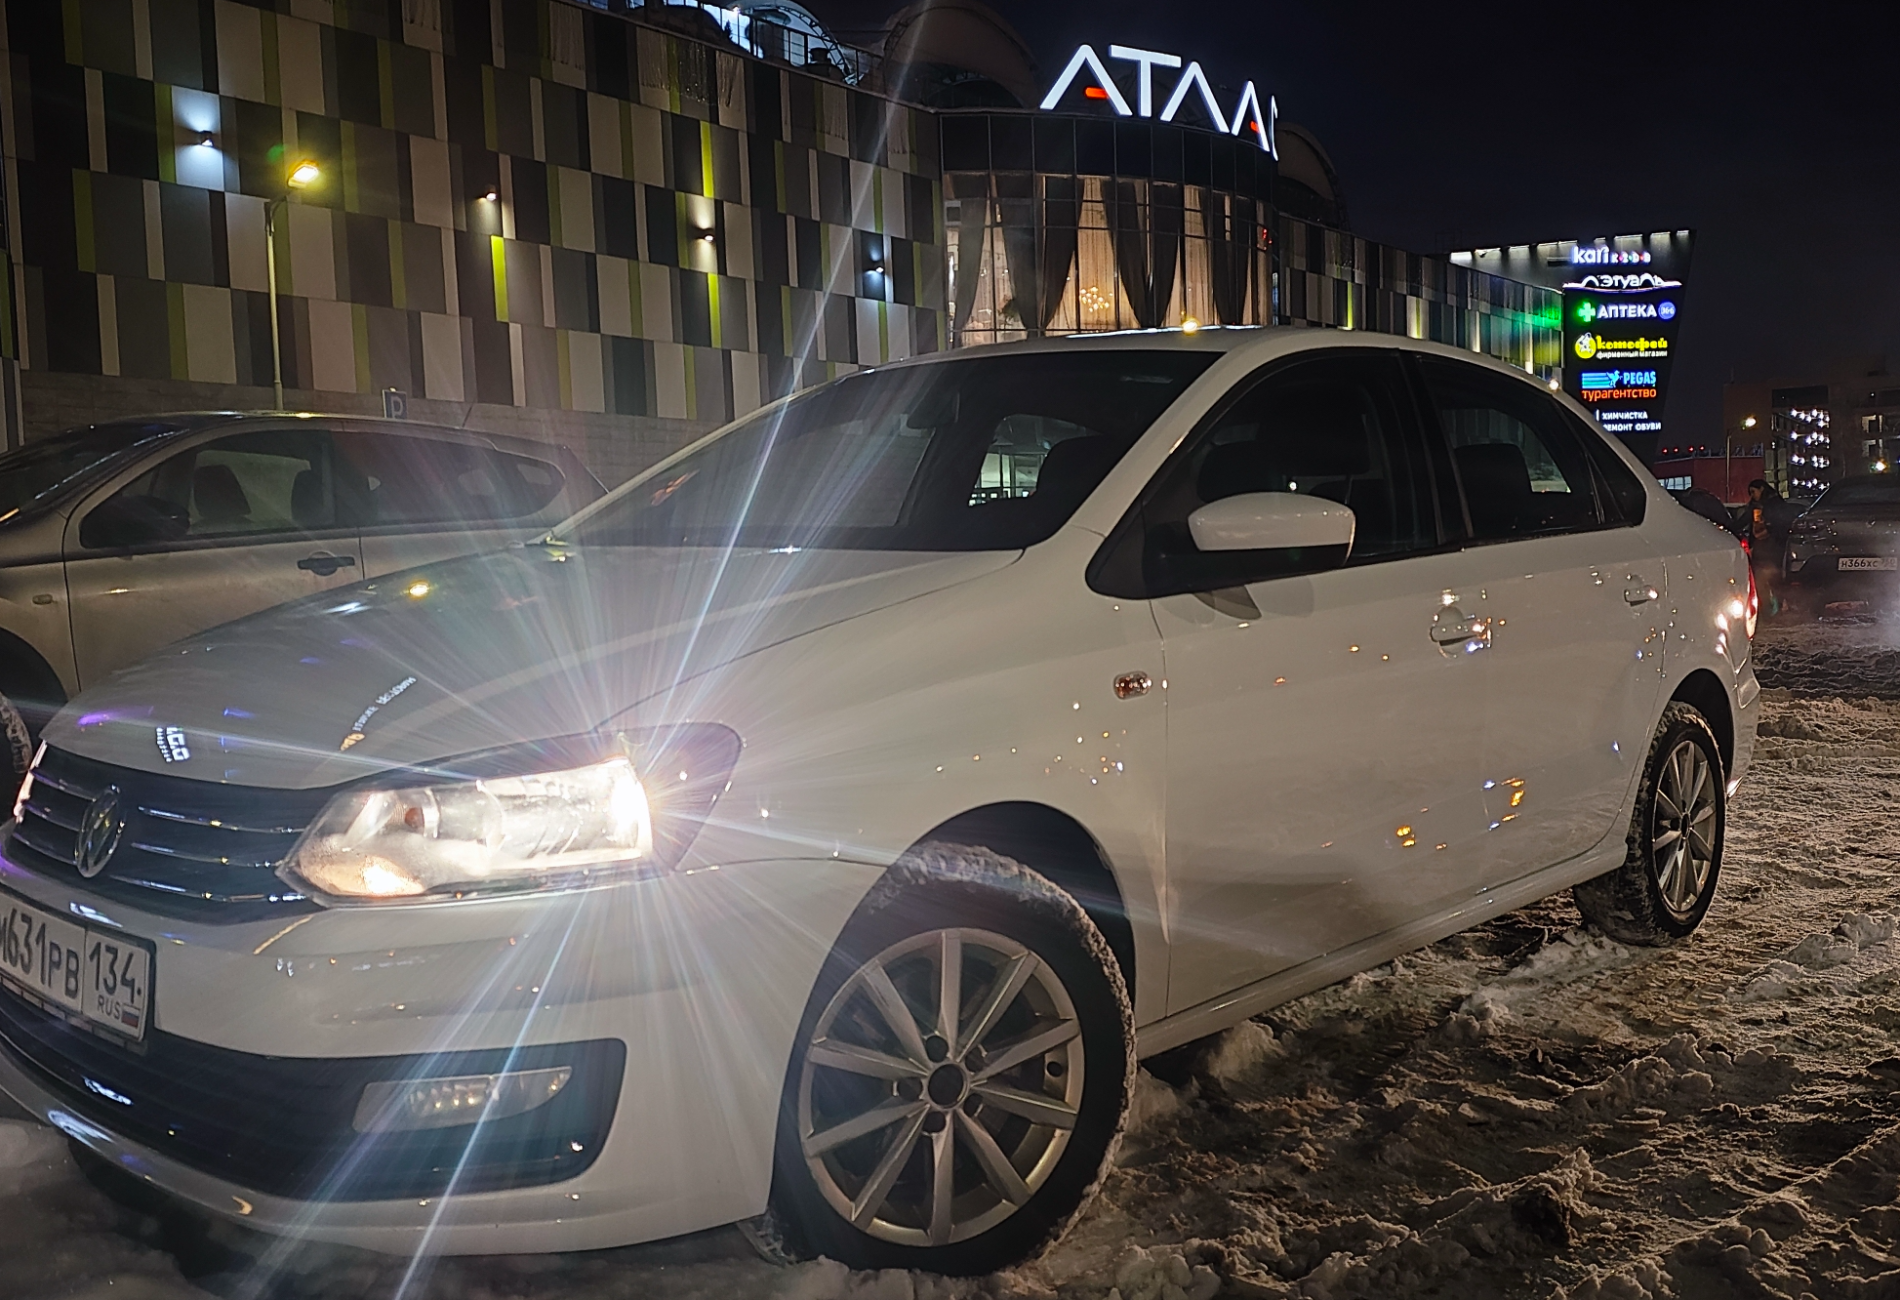 Аренда volkswagen polo эконом класса 2019 года в городе Москва от 2240 руб./сутки, передний привод, двигатель: бензин, объем 1.6 литров, ОСАГО (Мультидрайв), без водителя, недорого - RentRide